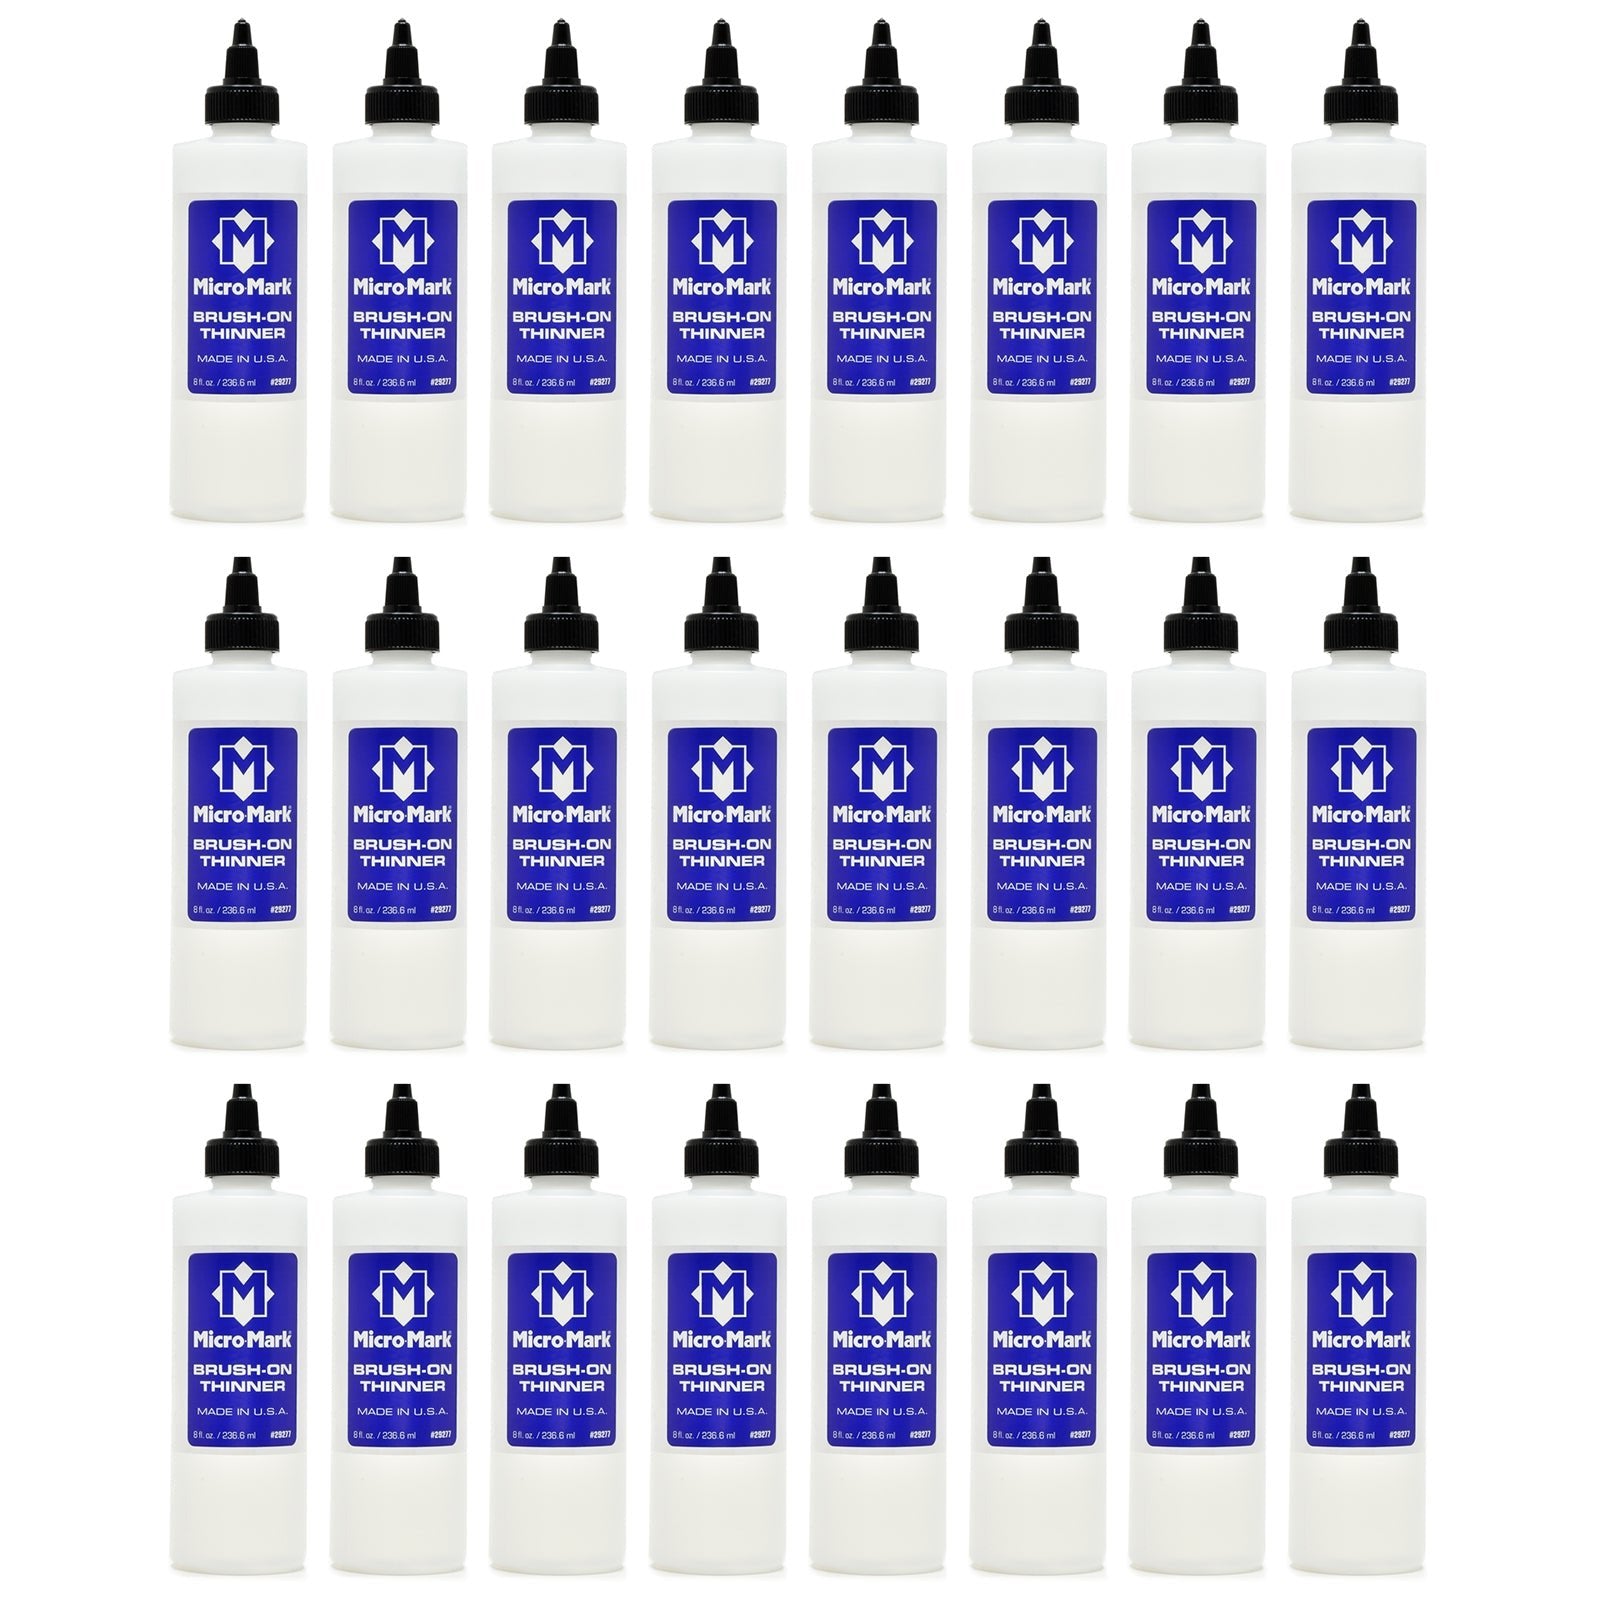 Micro - Mark Brush - on Thinner, 24 Pack Case 8 oz bottles